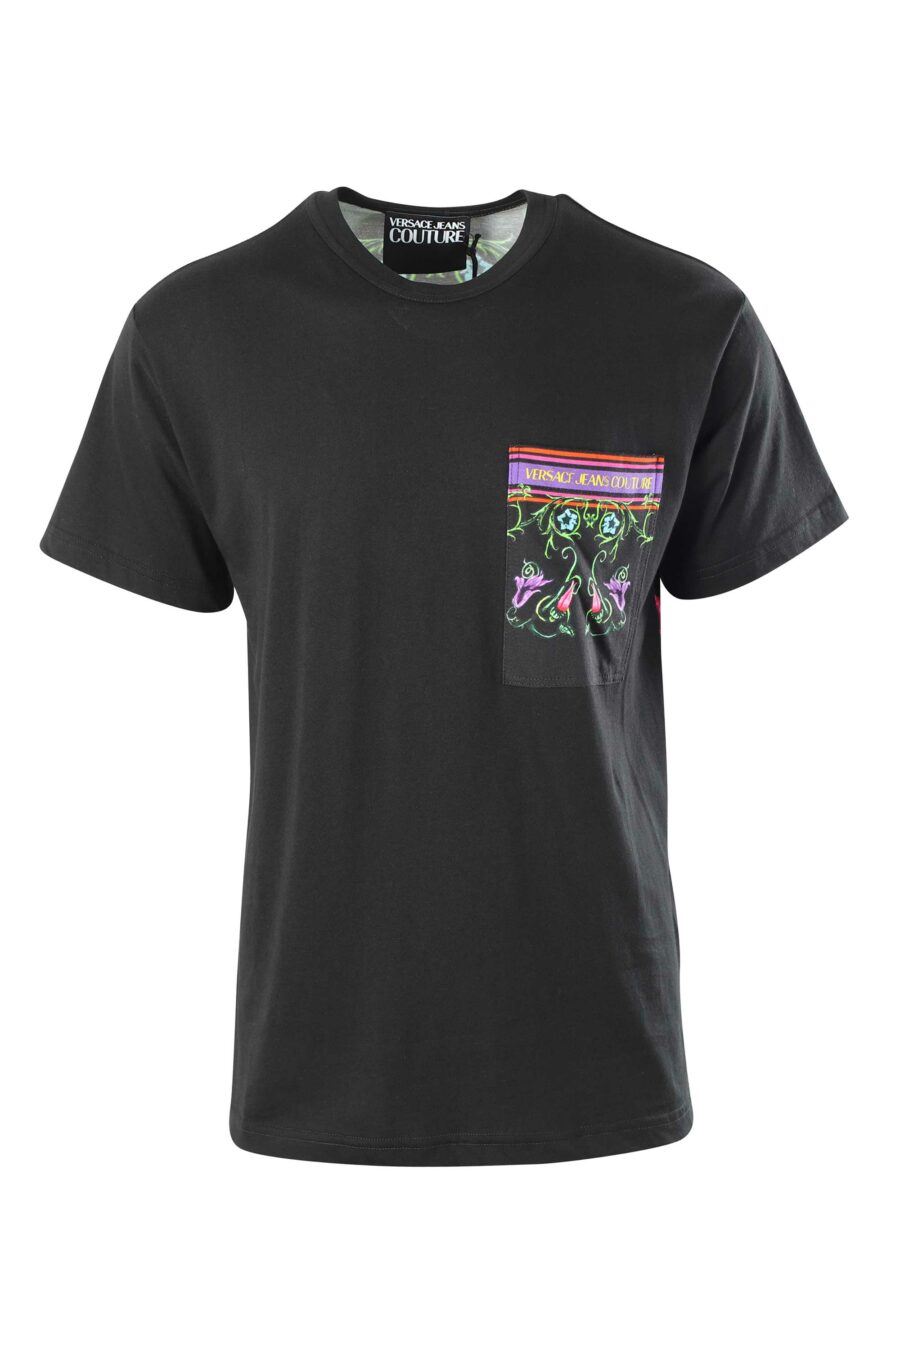 Camiseta negra con bolsillo multicolor flores - 8052019417210